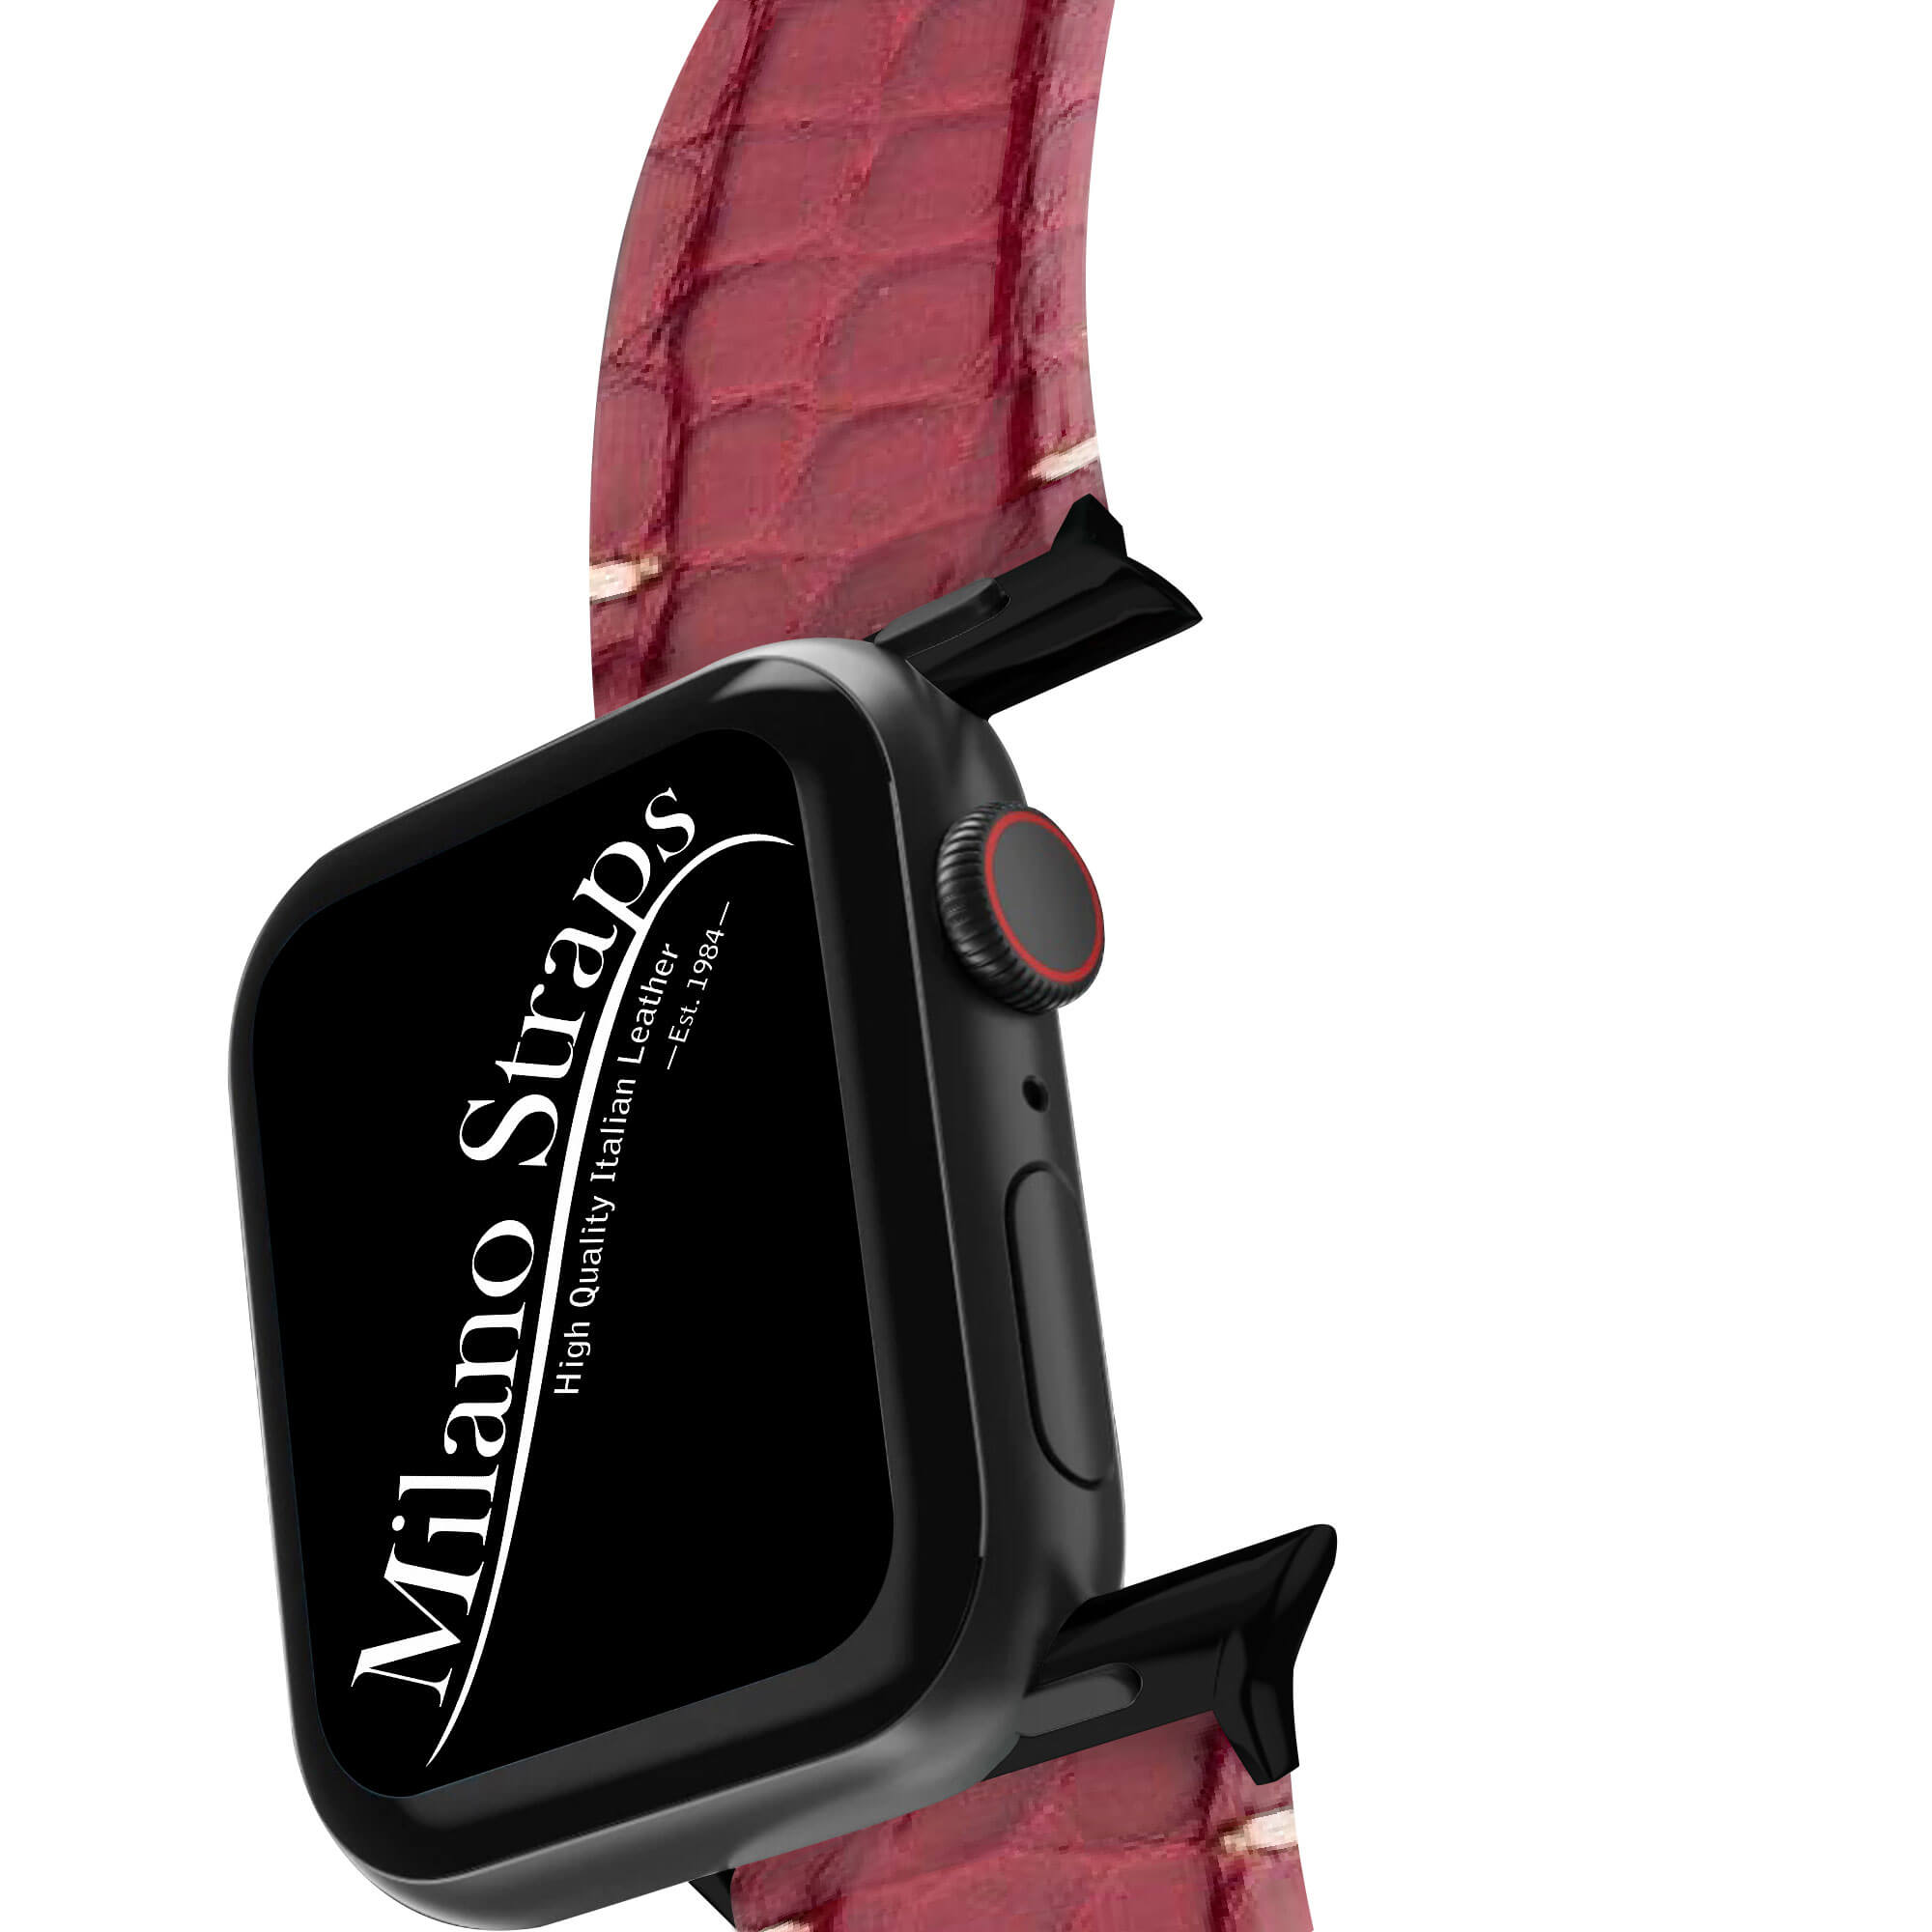 Apple Watch Leather Band ™ Burgundy Alligator Millennium Minimal Stitches Watch Strap - Milano Straps